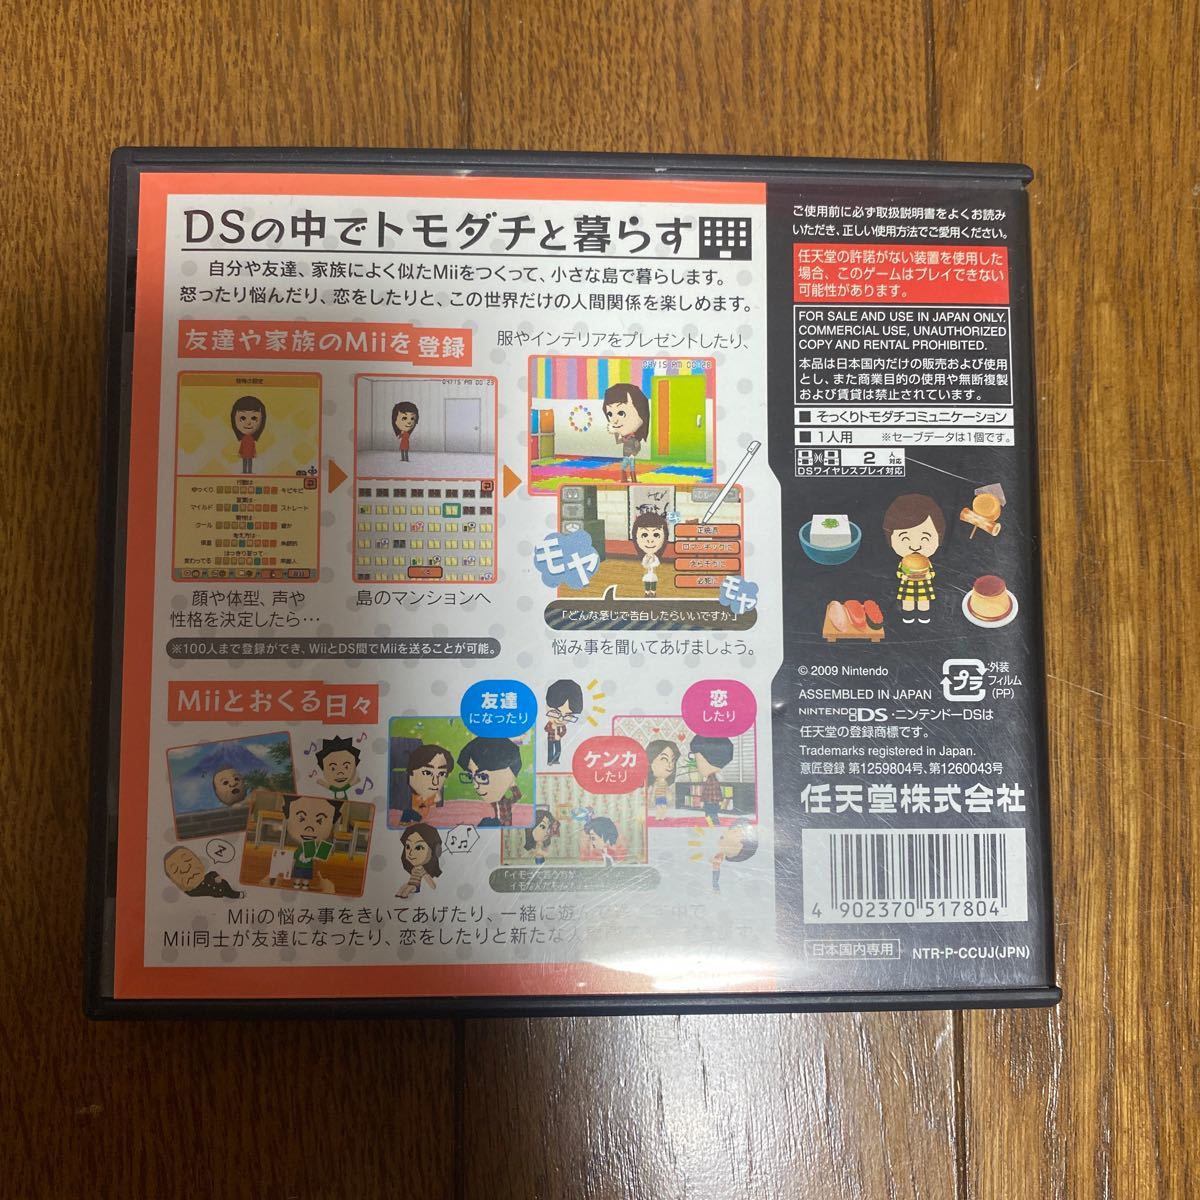 トモダチコレクション新生活 トモダチコレクション DSソフト 任天堂3DS 3DS おいでよどうぶつの森 ニンテンドー3DS